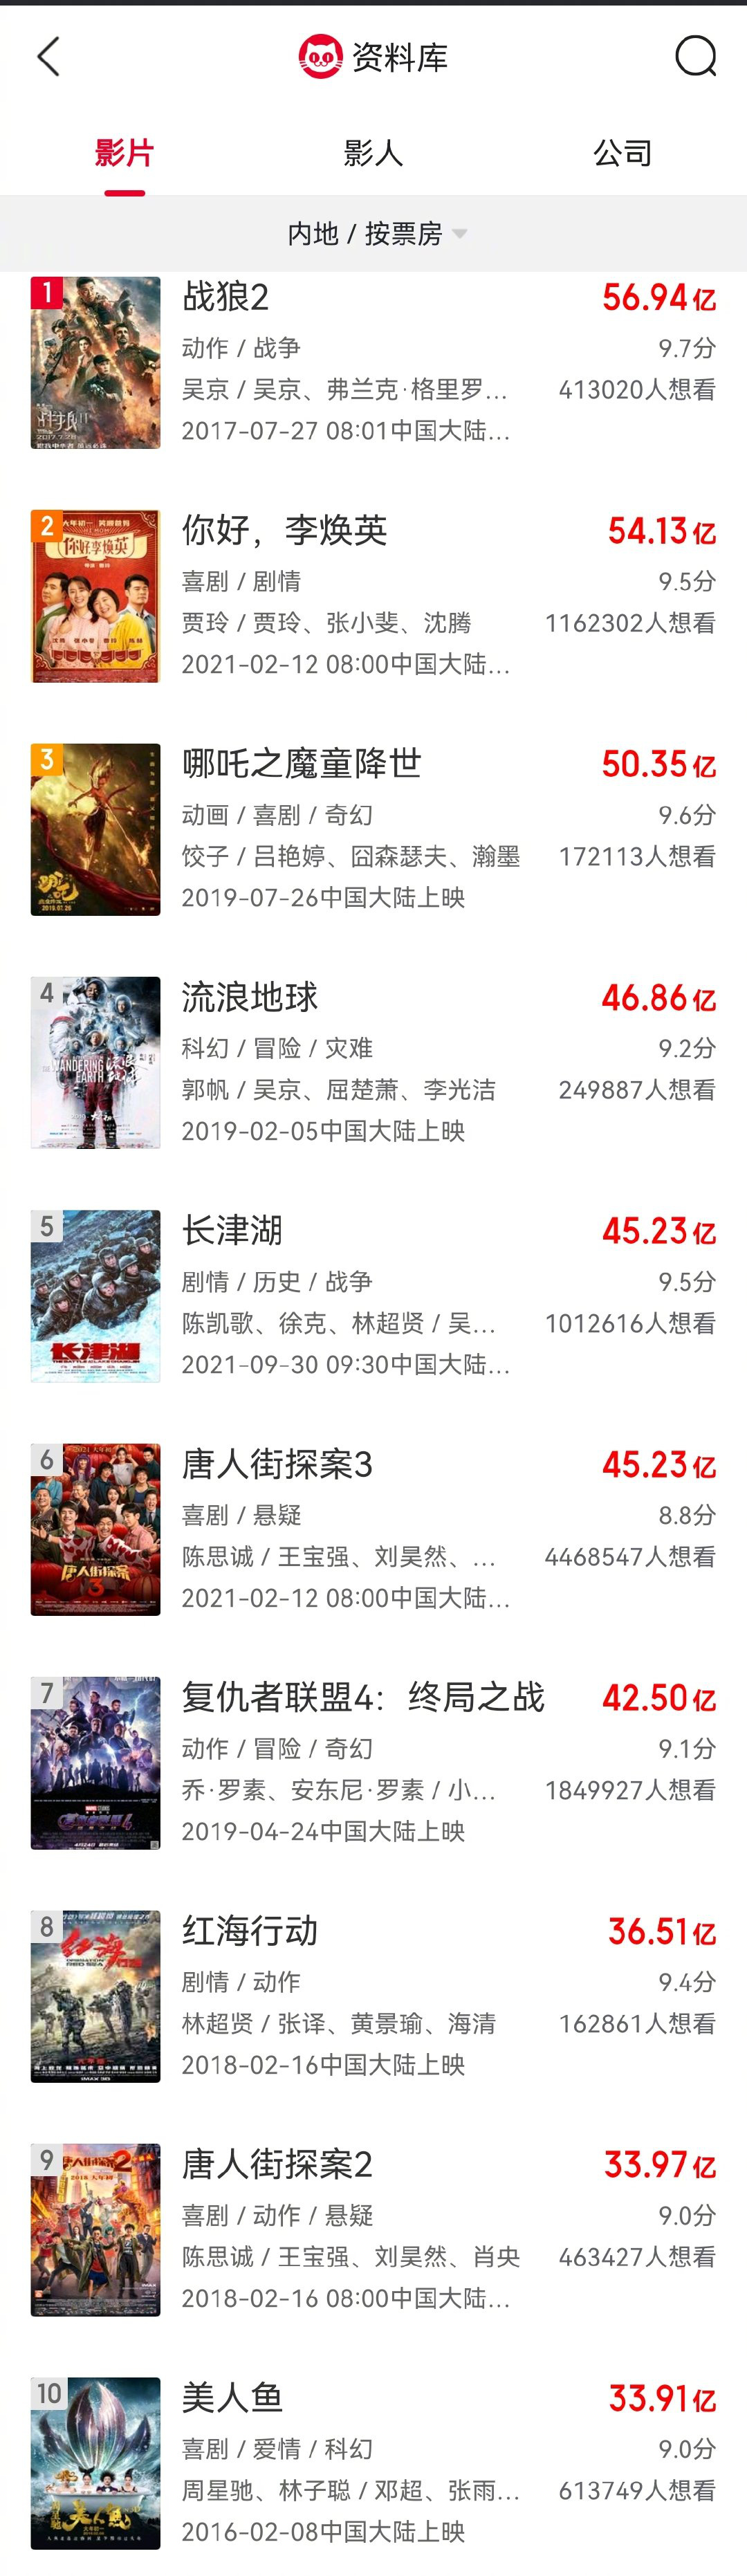 《长津湖》超《唐探3》 跃居中国影史票房榜第五